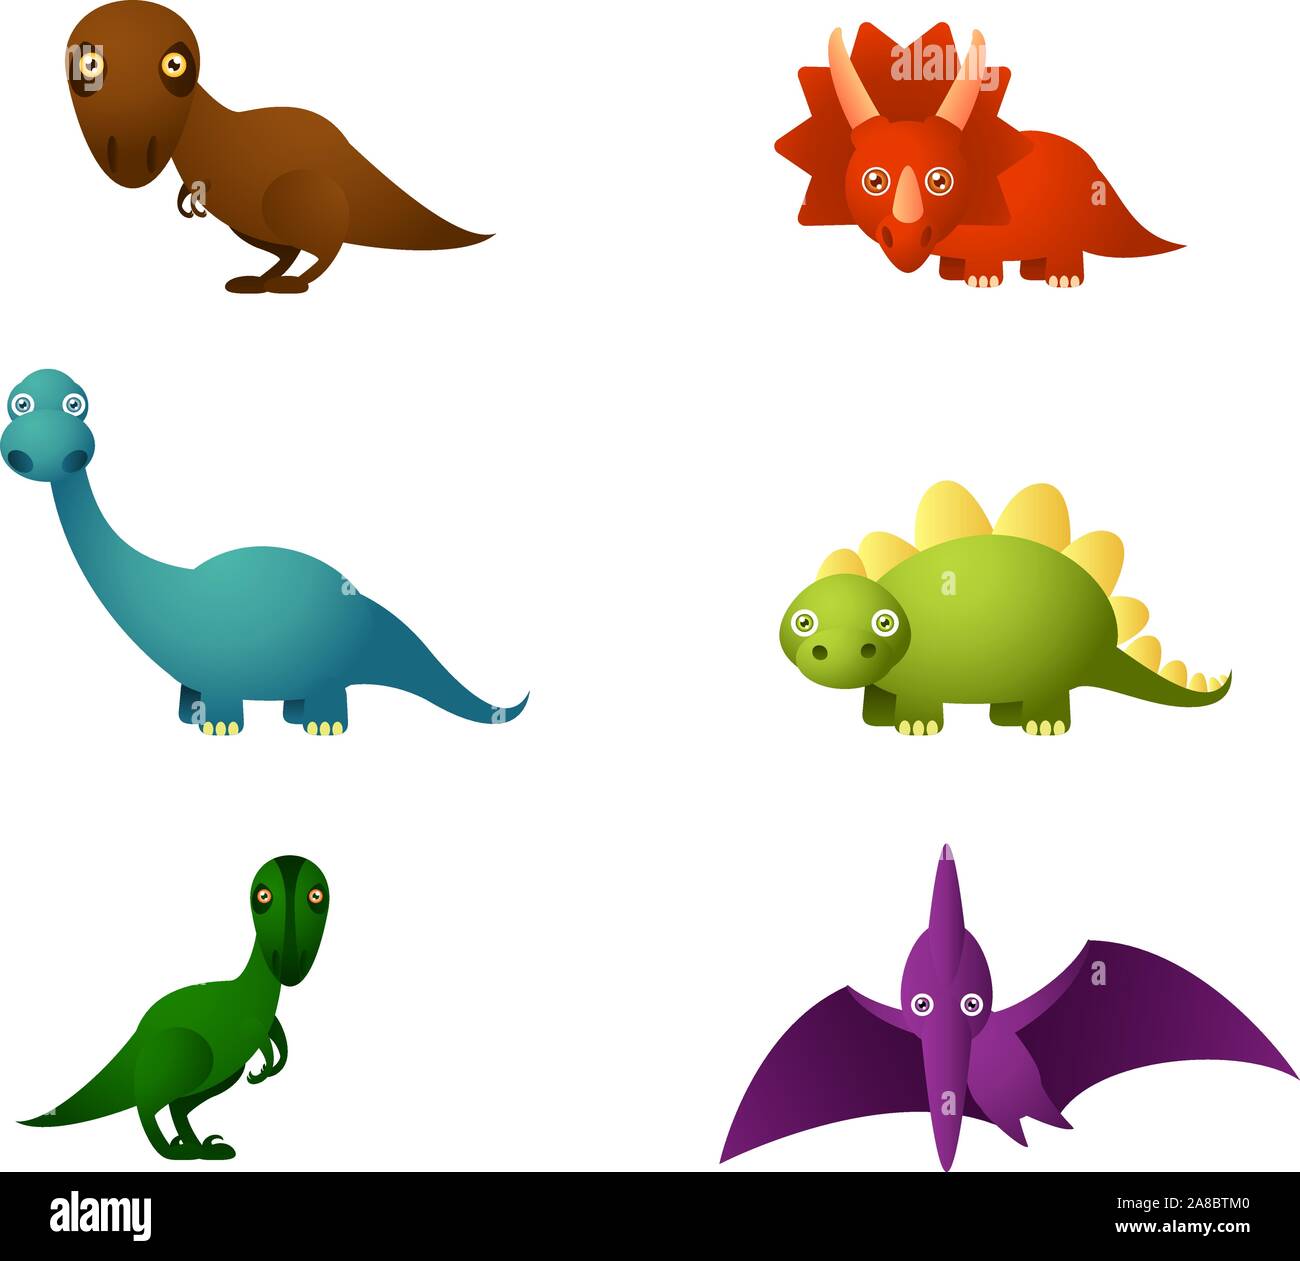 Sei Cartoon set di dinosauri, con sei differenti dinosauri in diversi colori:  brown dinosauro, dinosauro rosso, blu, dinosauro dinosauro verde e viola di  Immagine e Vettoriale - Alamy